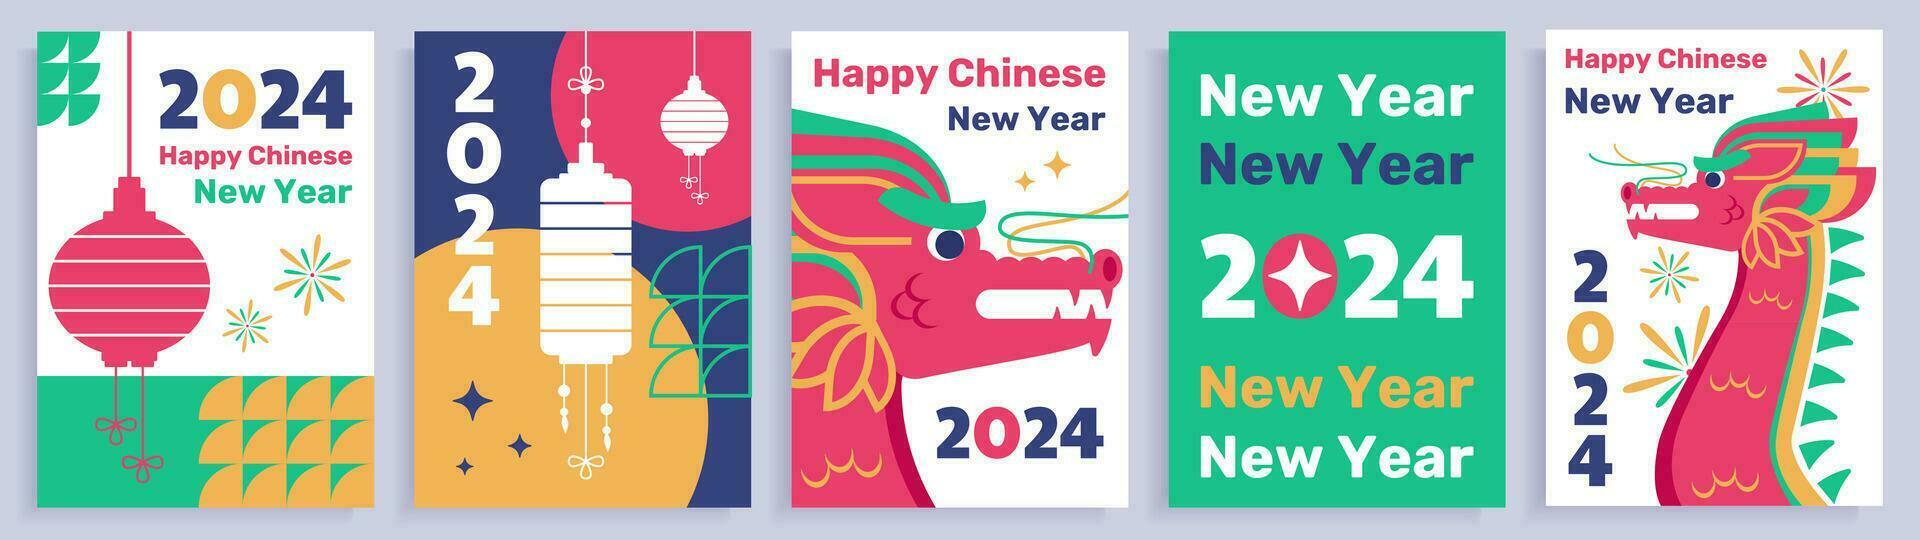 conjunto de cinco chino nuevo año carteles, saludos con 2024 nuevo año, plano estilo carteles con dragones y oriental asiático decoraciones, vector